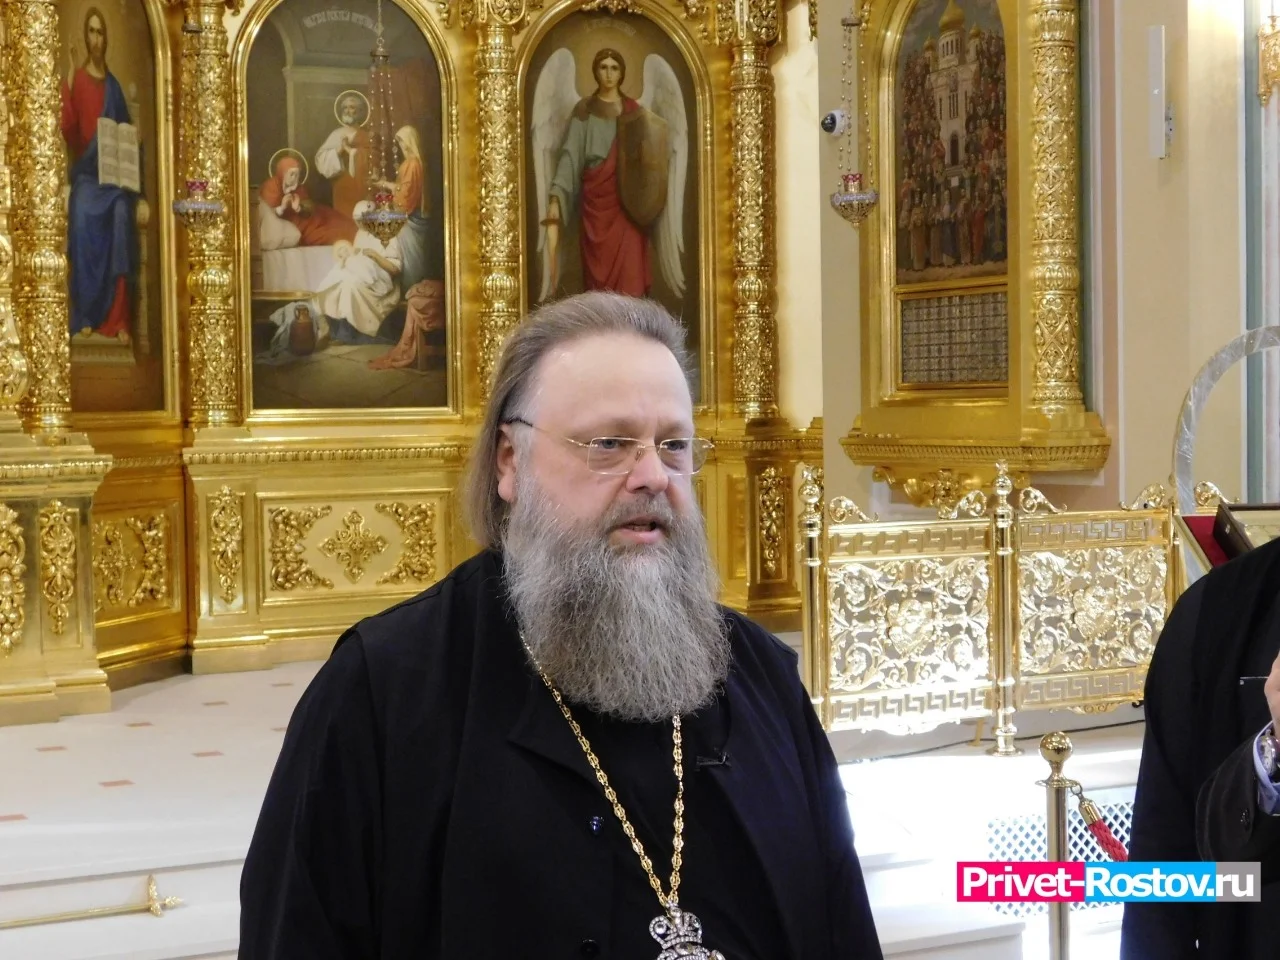 Ростовский митрополит провел встречу с подростками из Азова‚ которые надругались над иконами